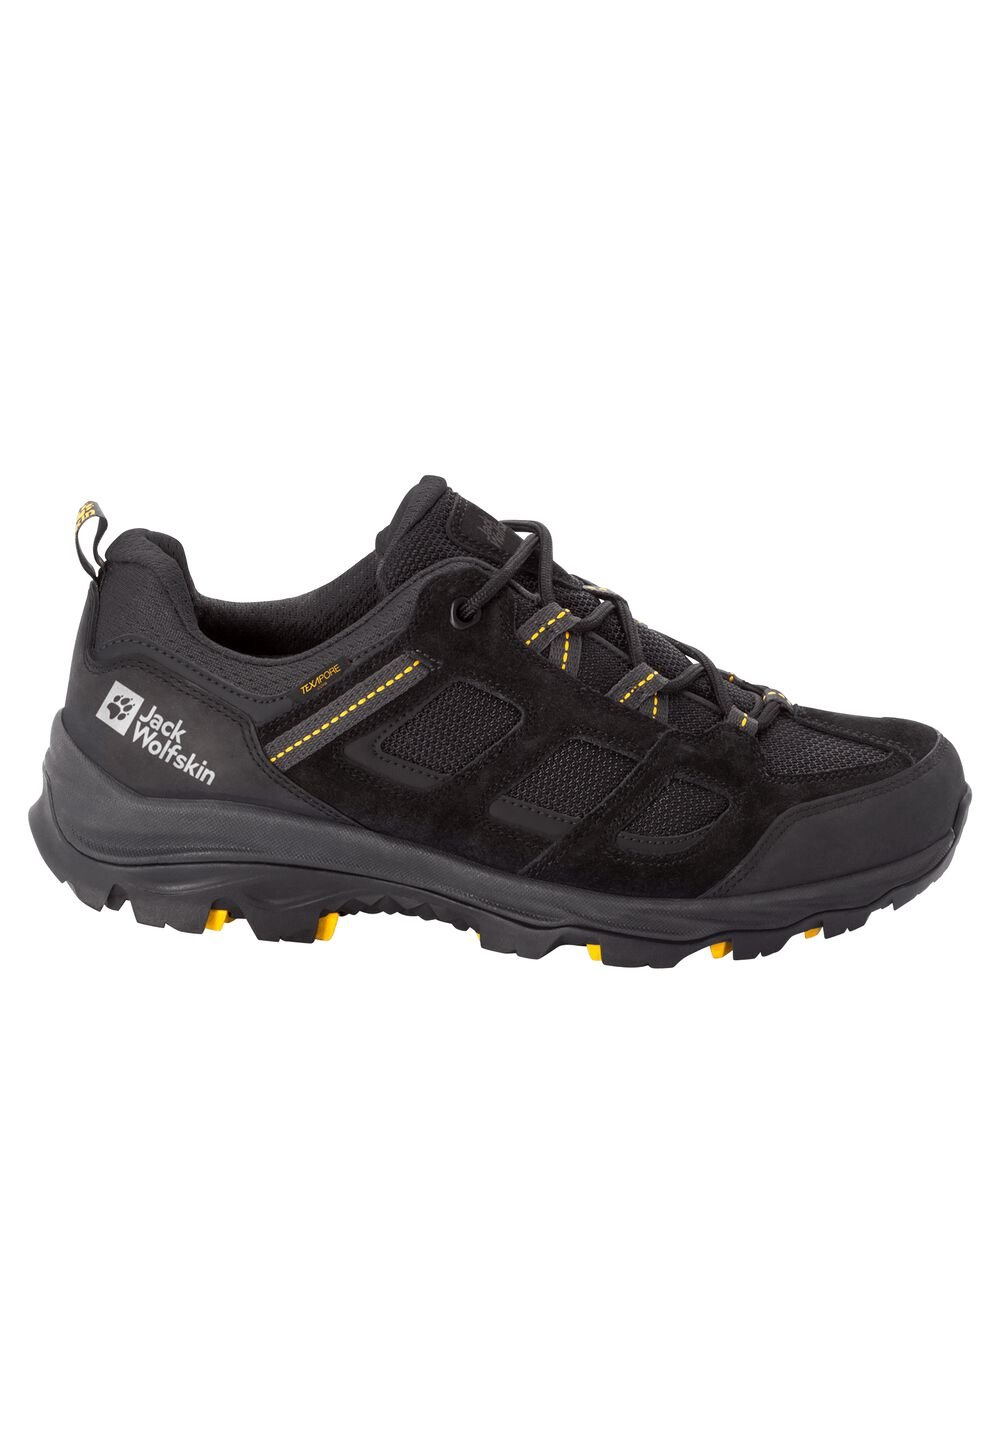 Chaussures de randonnée imperméables hommes Vojo 3 Texapore Low Men 10,5 noir black / burly yellow X